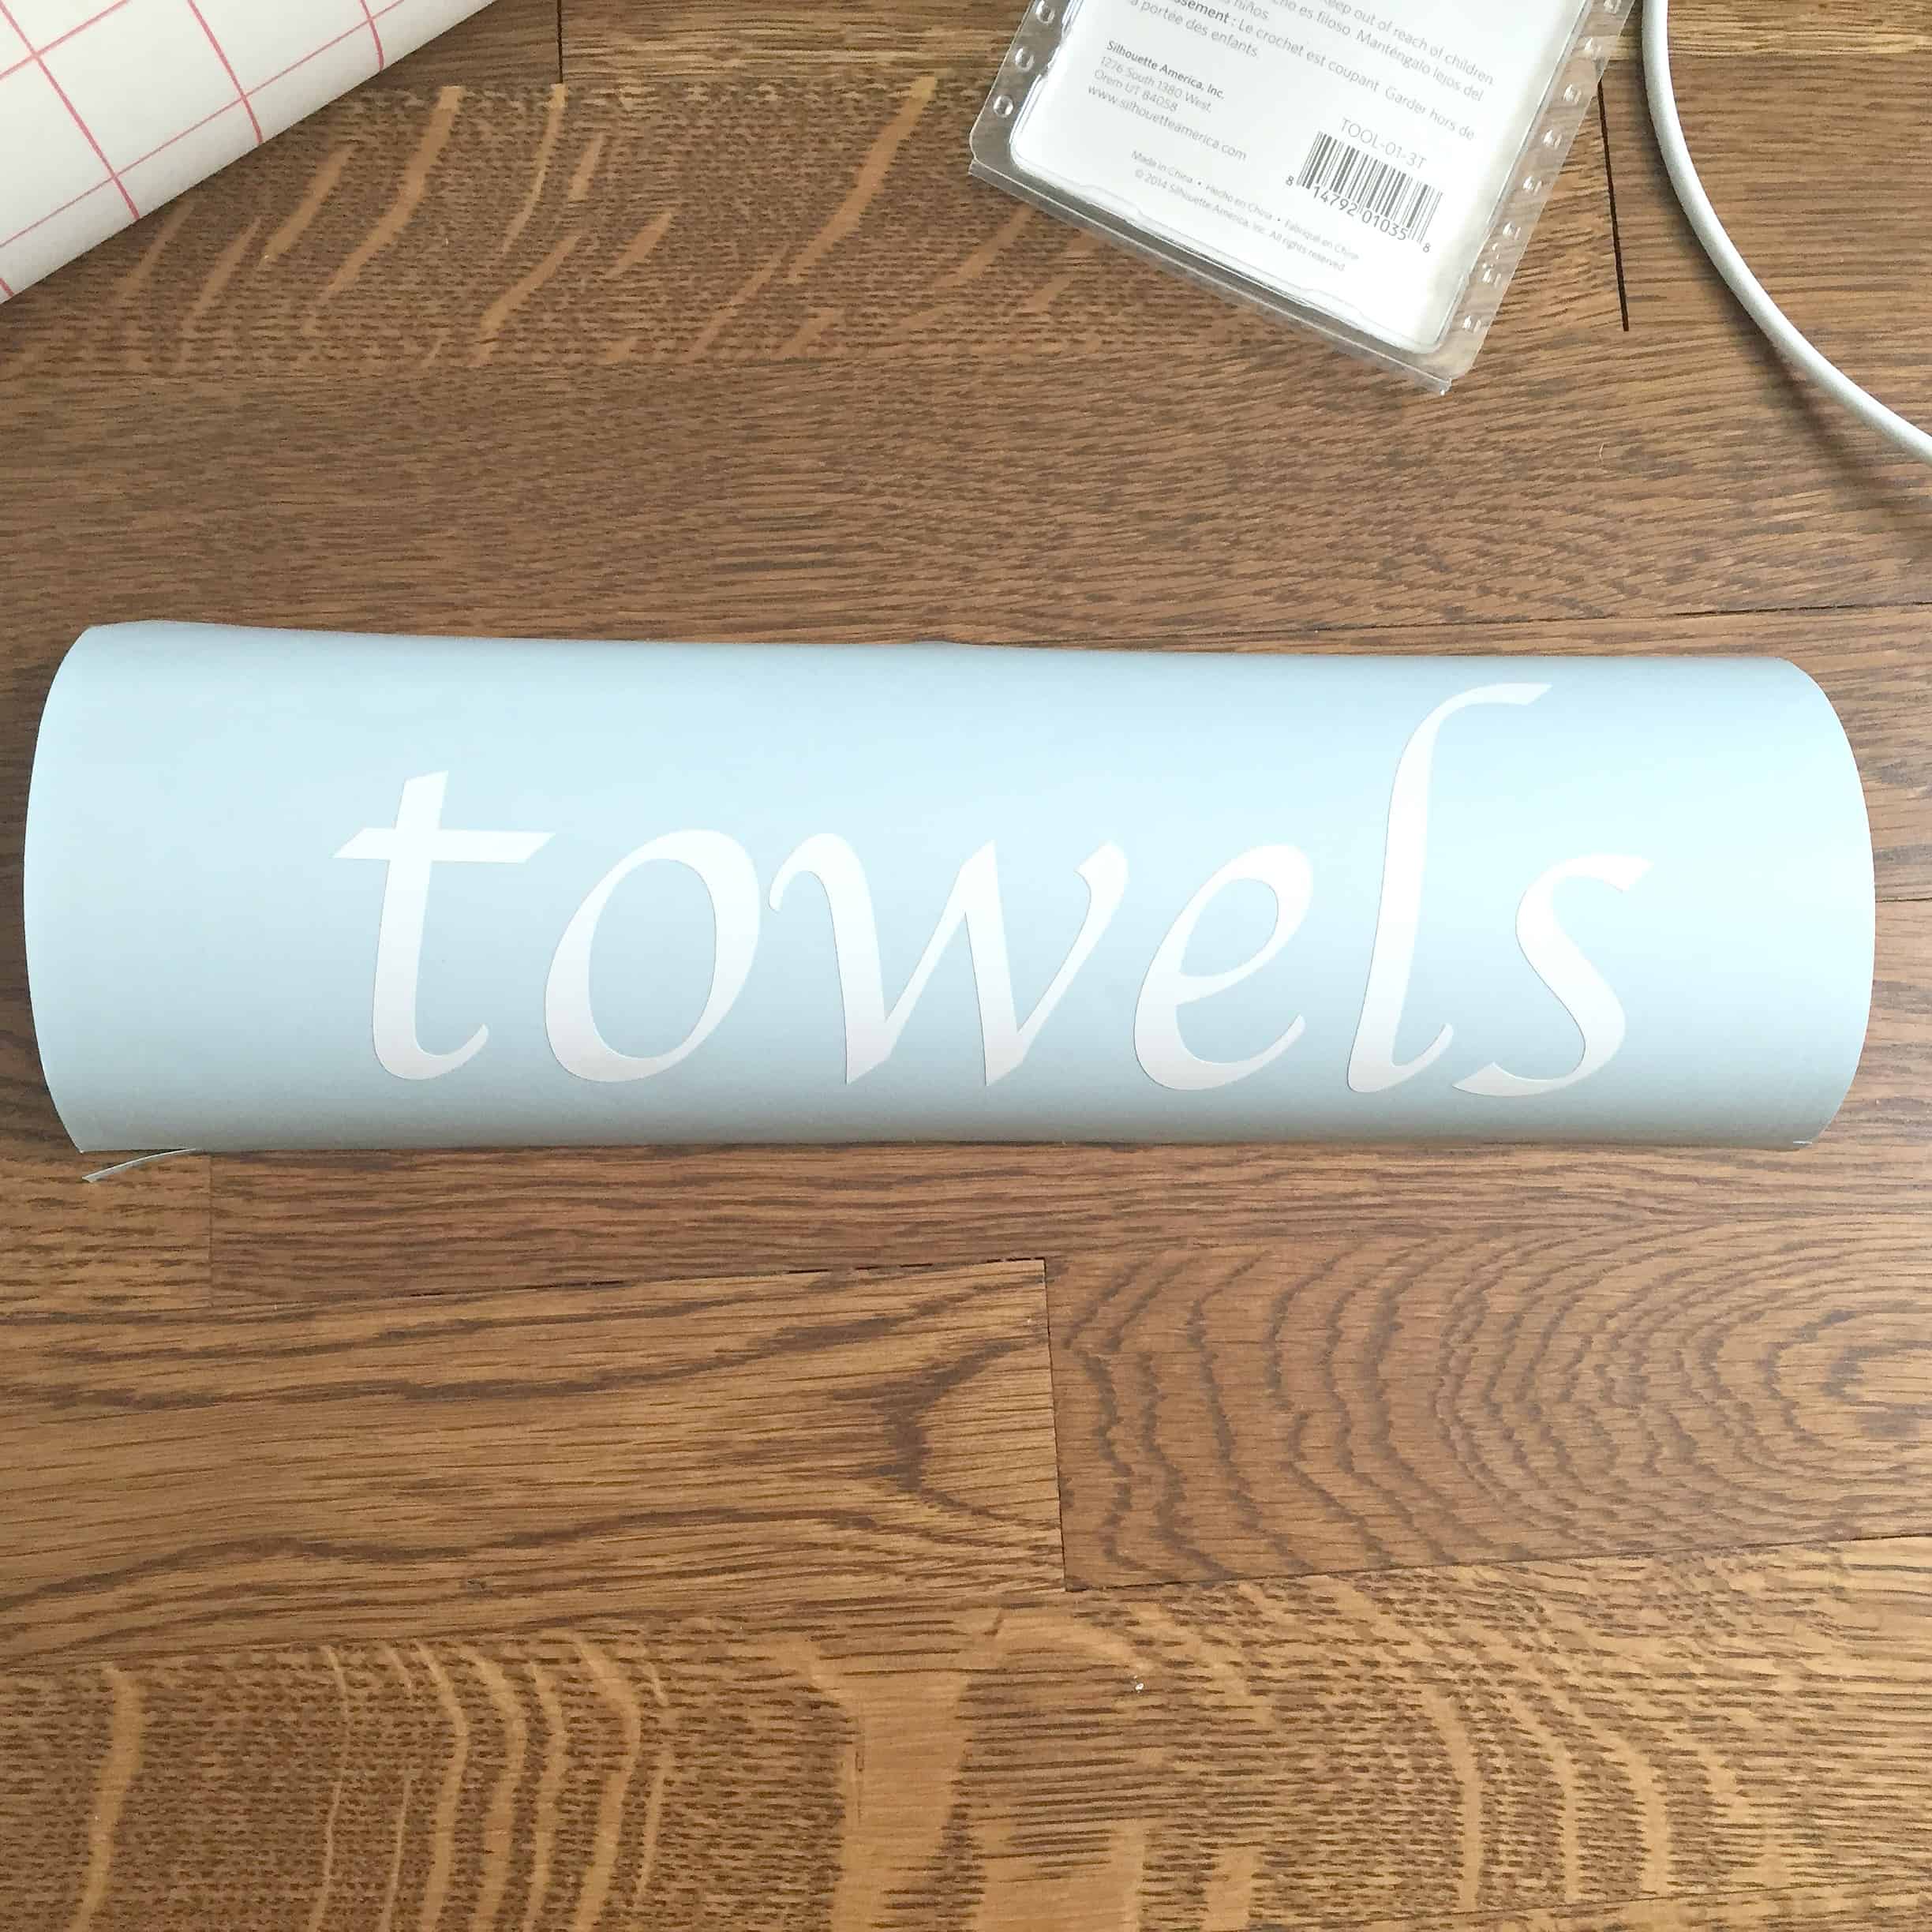 "towels" printed on vinyl